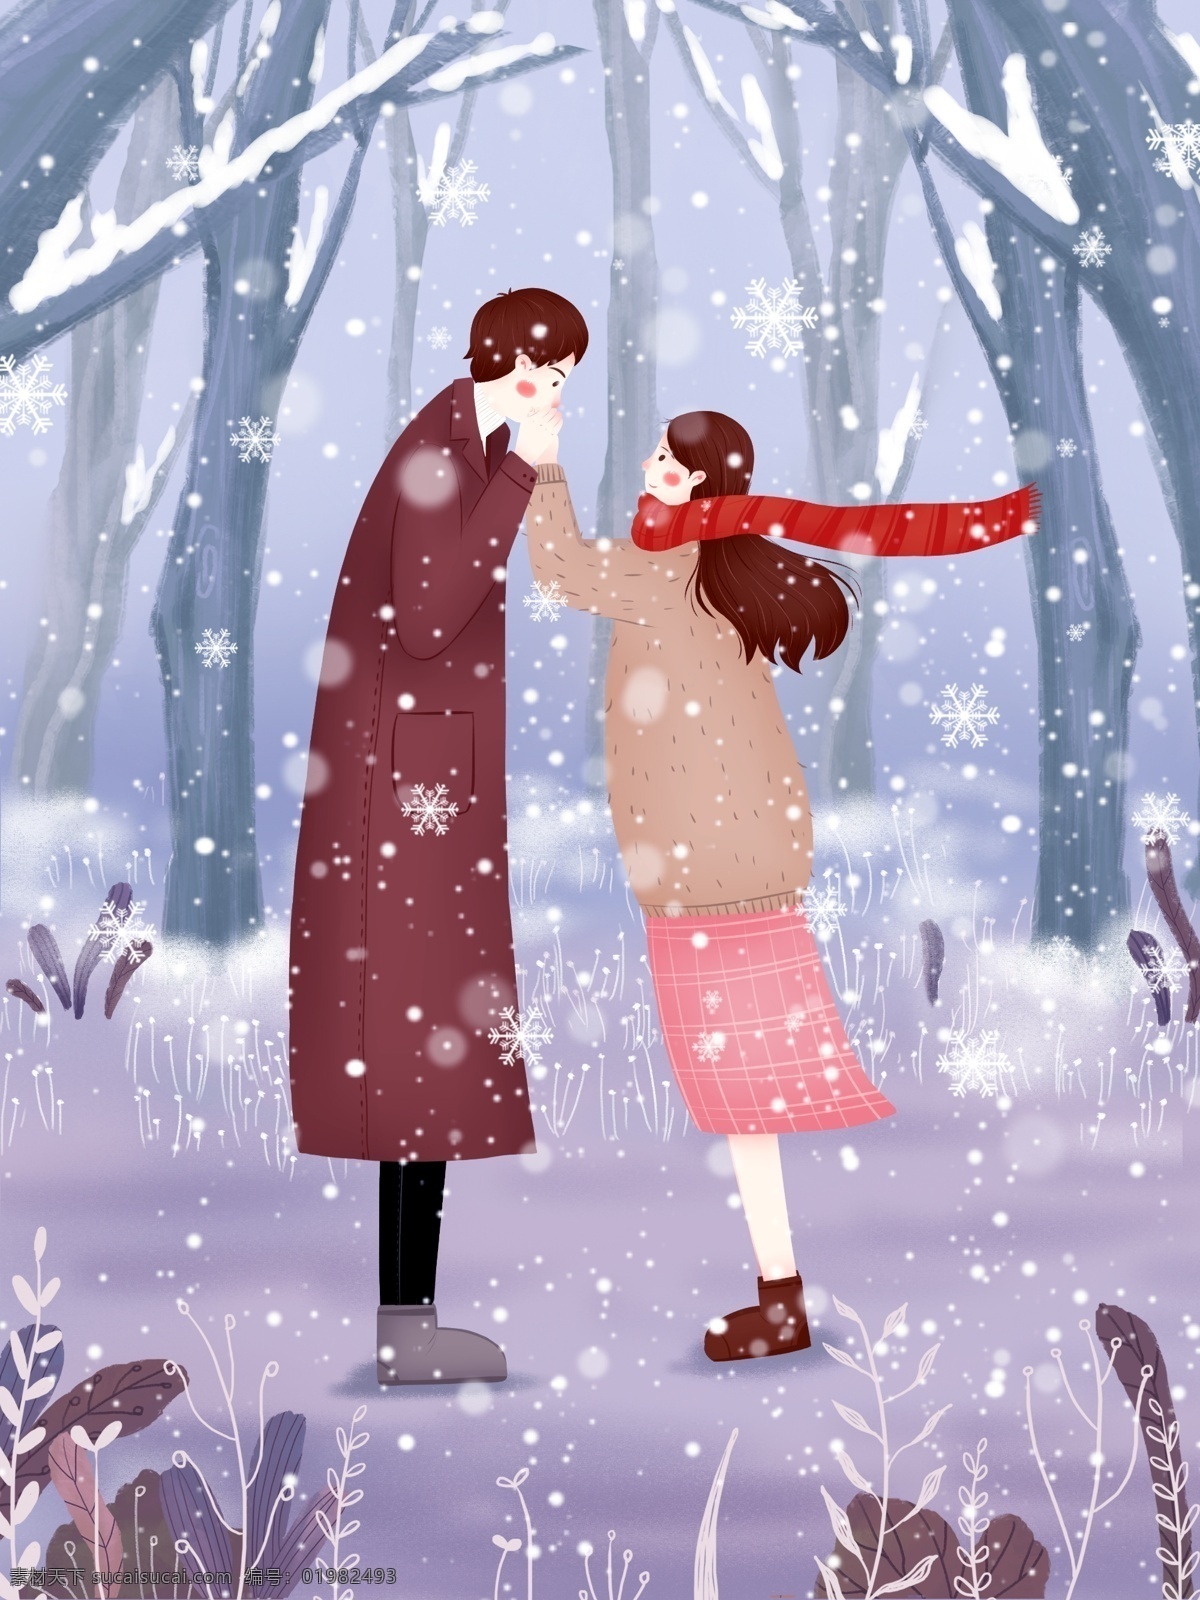 冬日 唯美 清新 情侣 插画 雪花 雪地 12月你好 下雪 喜欢 飘雪